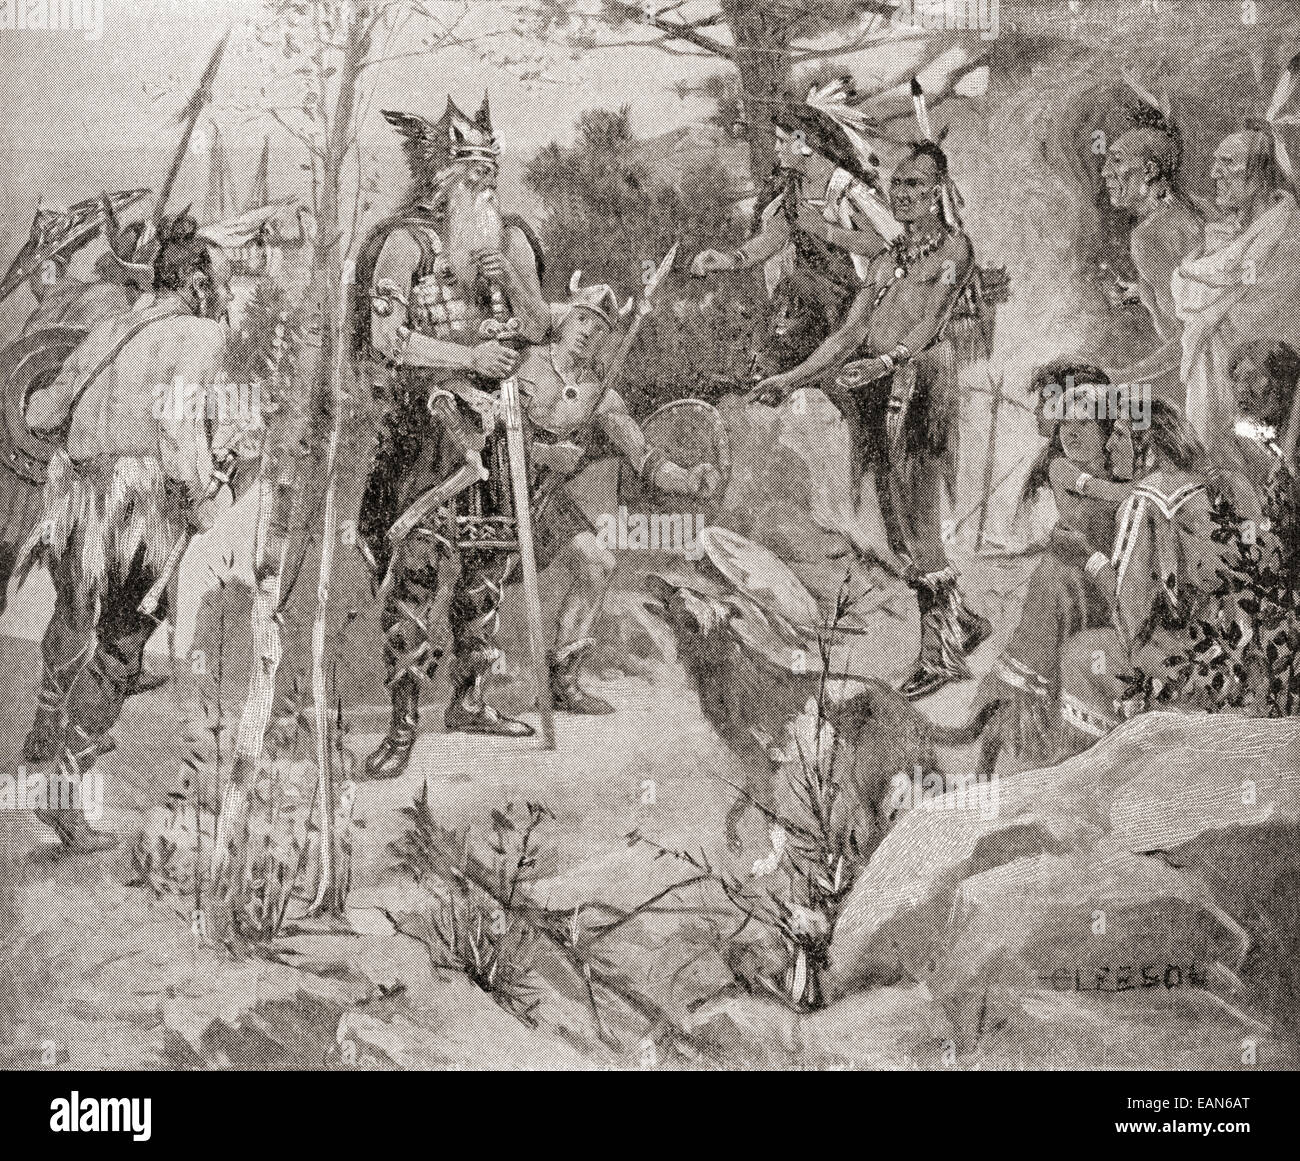 Das erste Treffen zwischen den Normannen und die Ureinwohner Nordamerikas im 11. Jahrhundert. Stockfoto